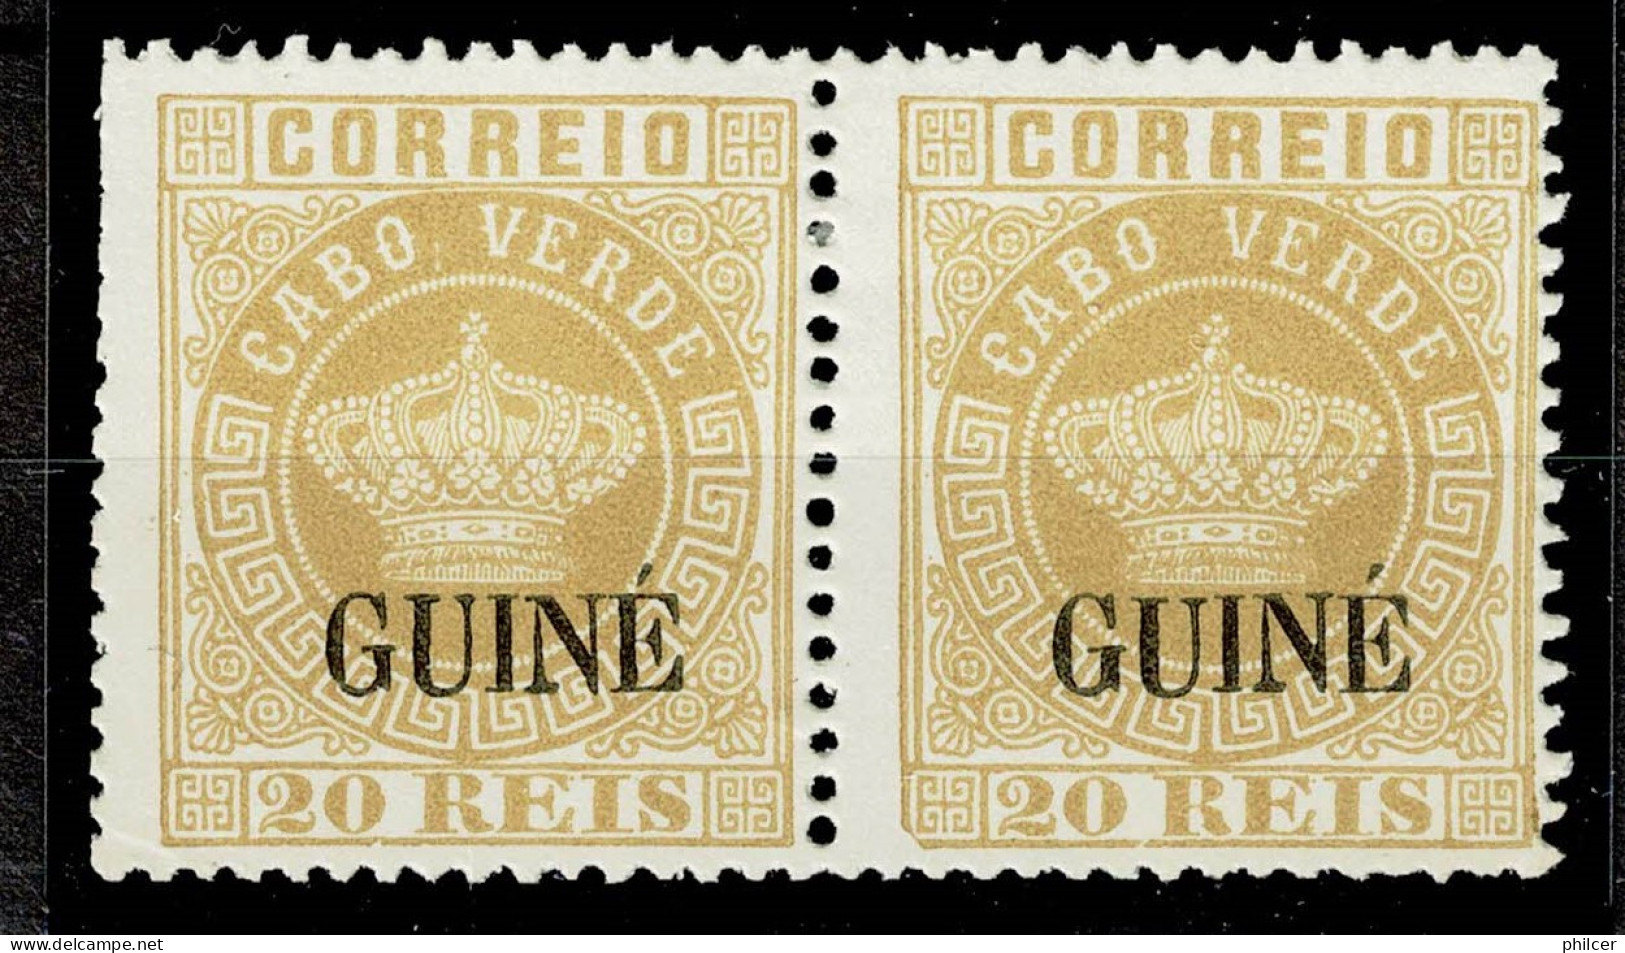 Guiné, 1885, # 12, Reprint, MNG - Portuguese Guinea